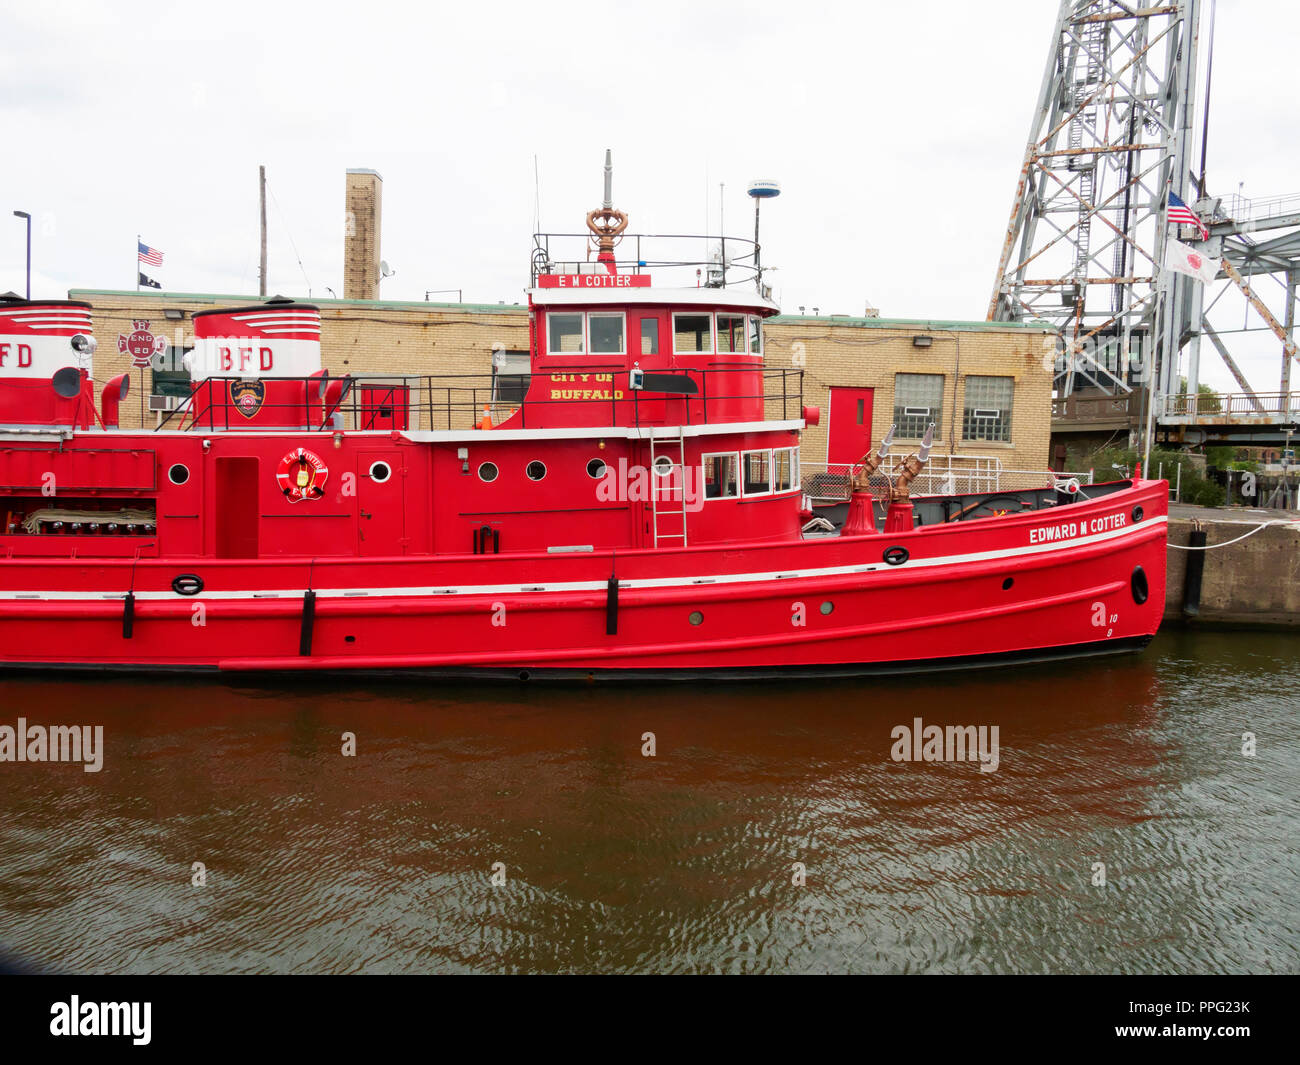 Edward M Cotter fireboat, Buffalo, New York Stock Photo